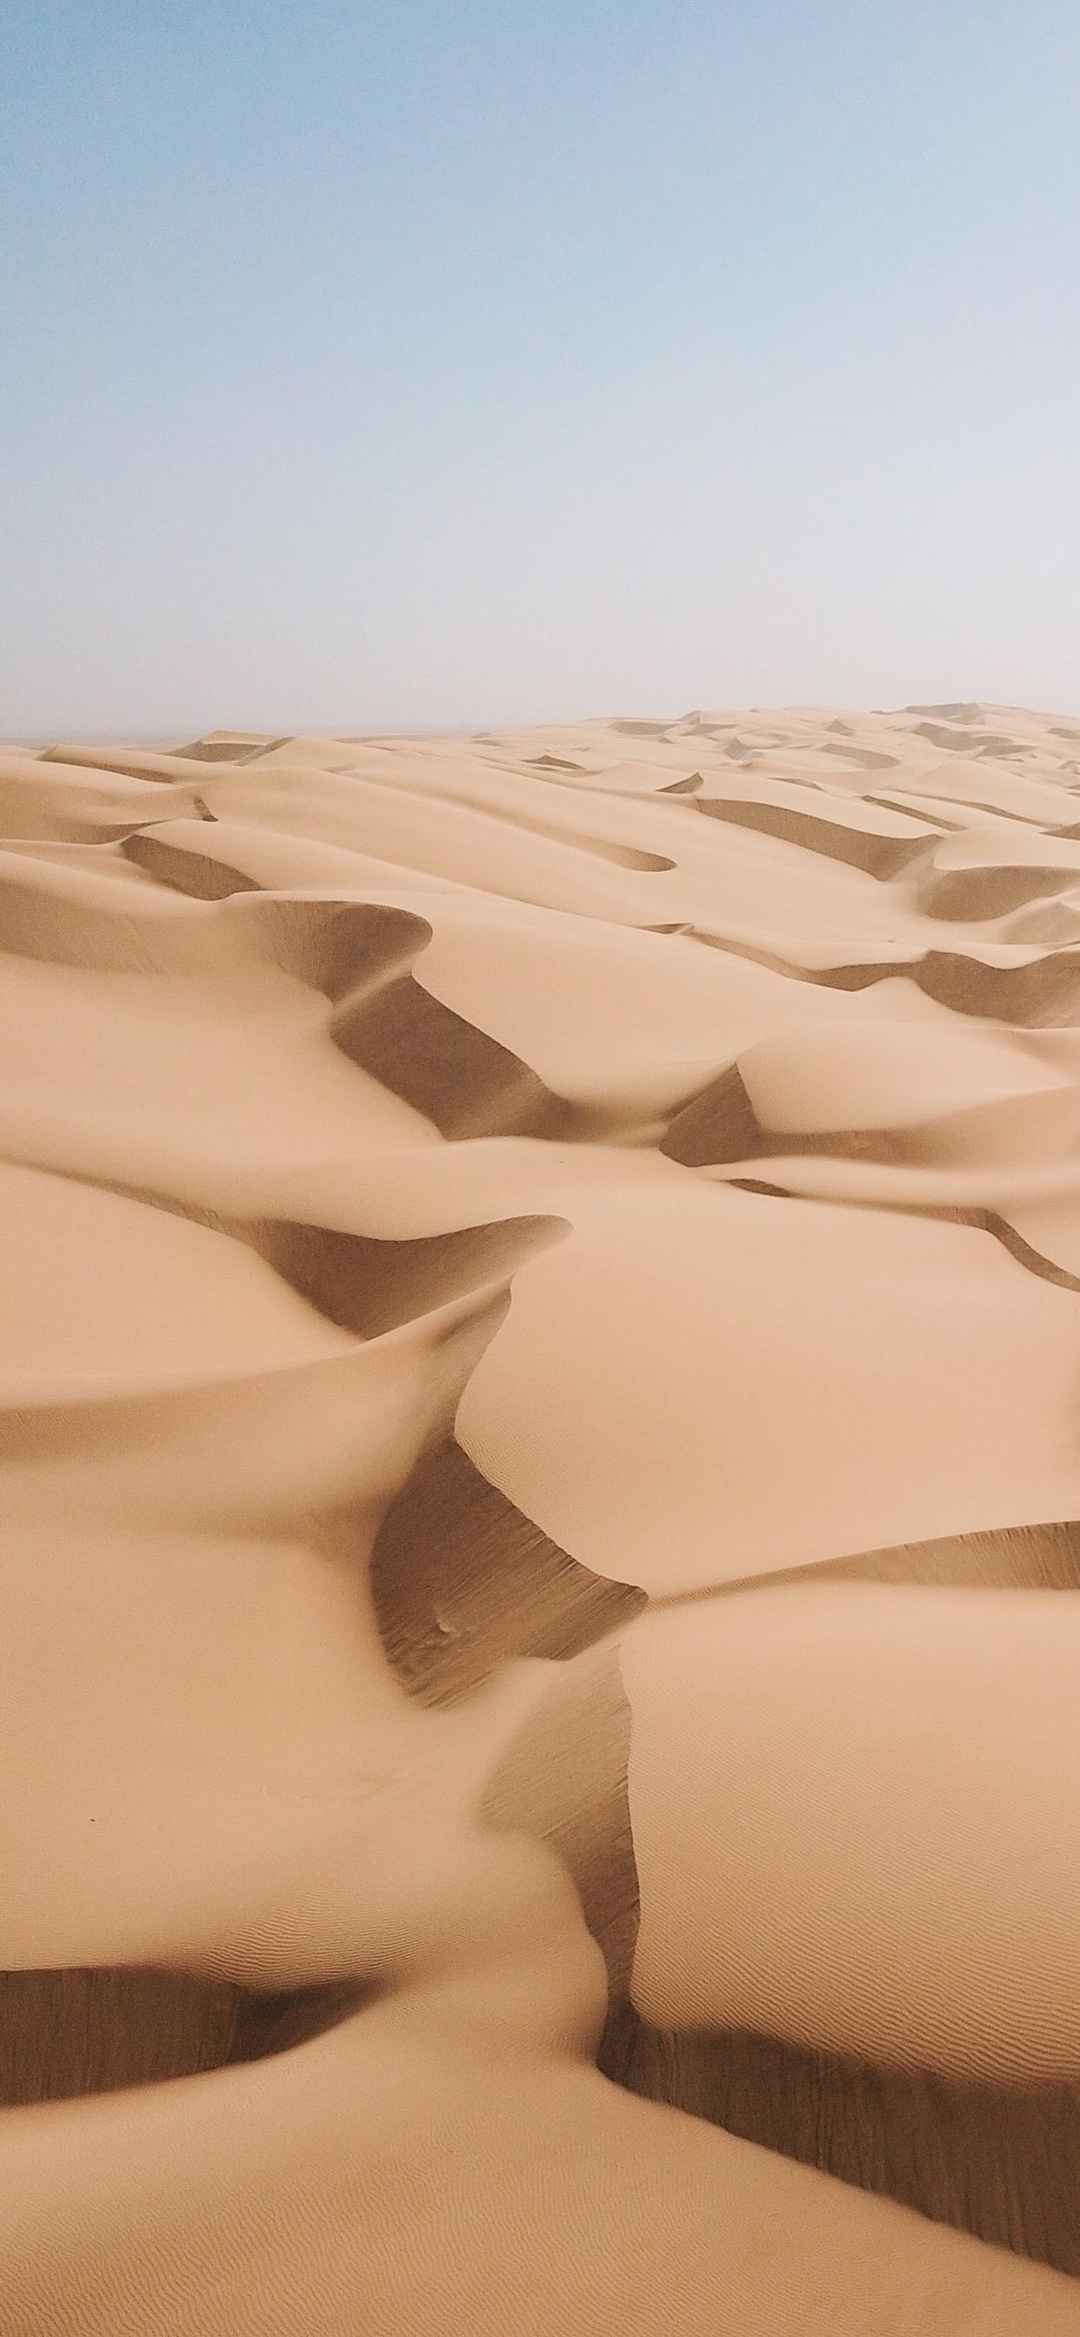 多彩沙漠风景图片手机壁纸-